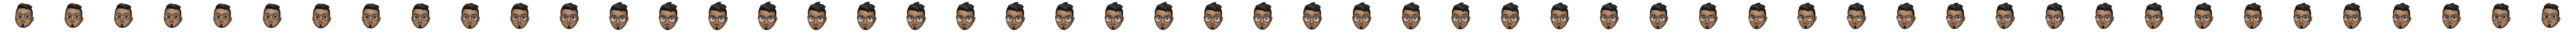 Dark haired developer with glasses